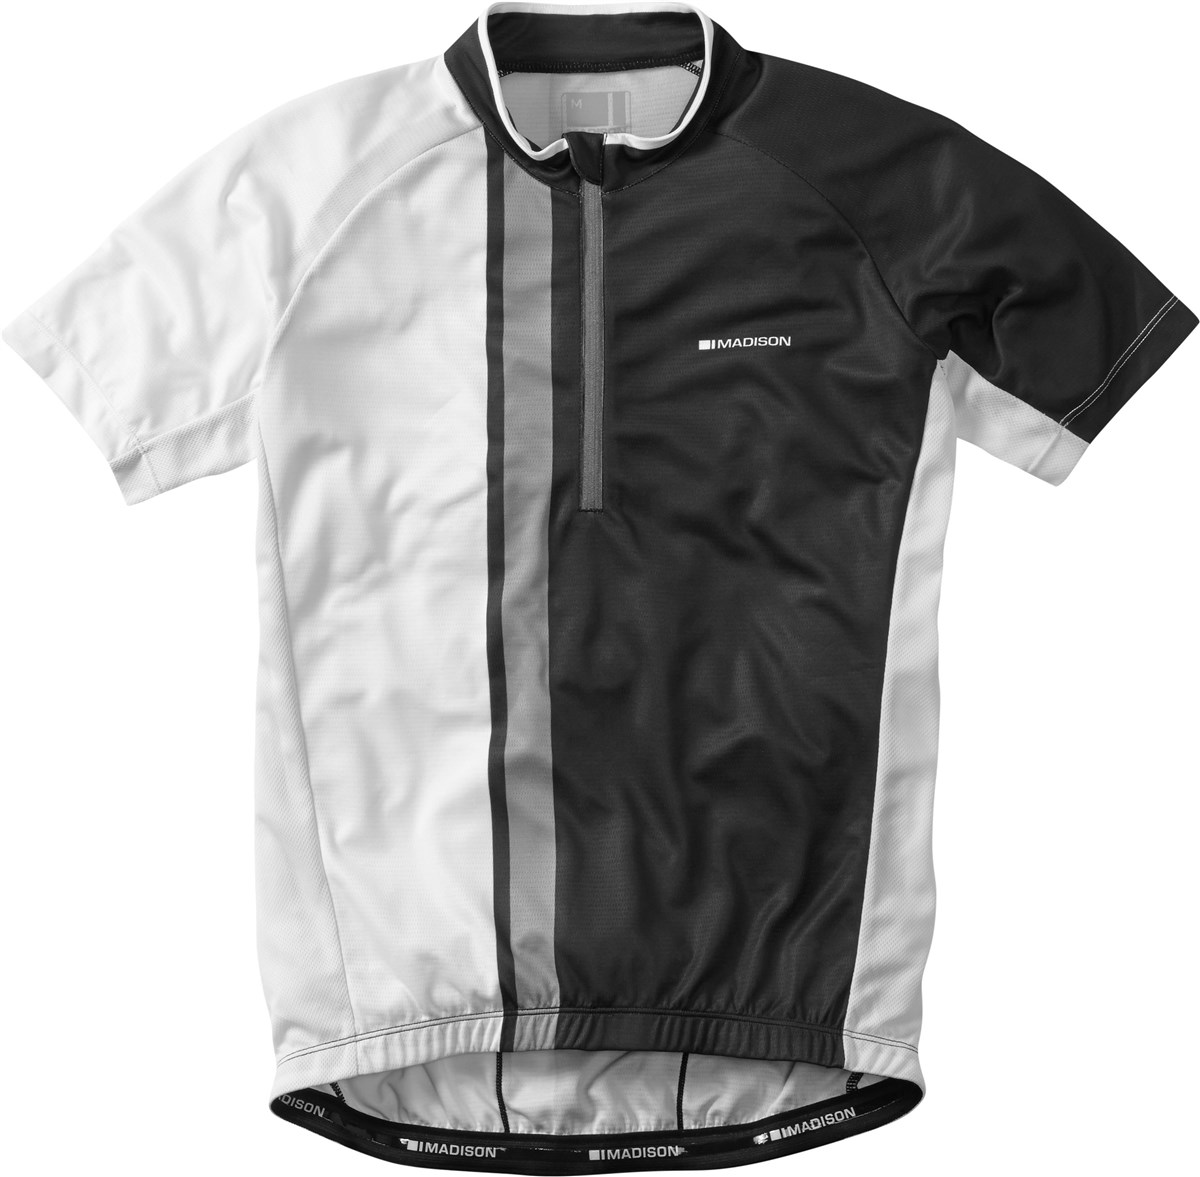 Madison Tour Short Sleeve Jersey product image